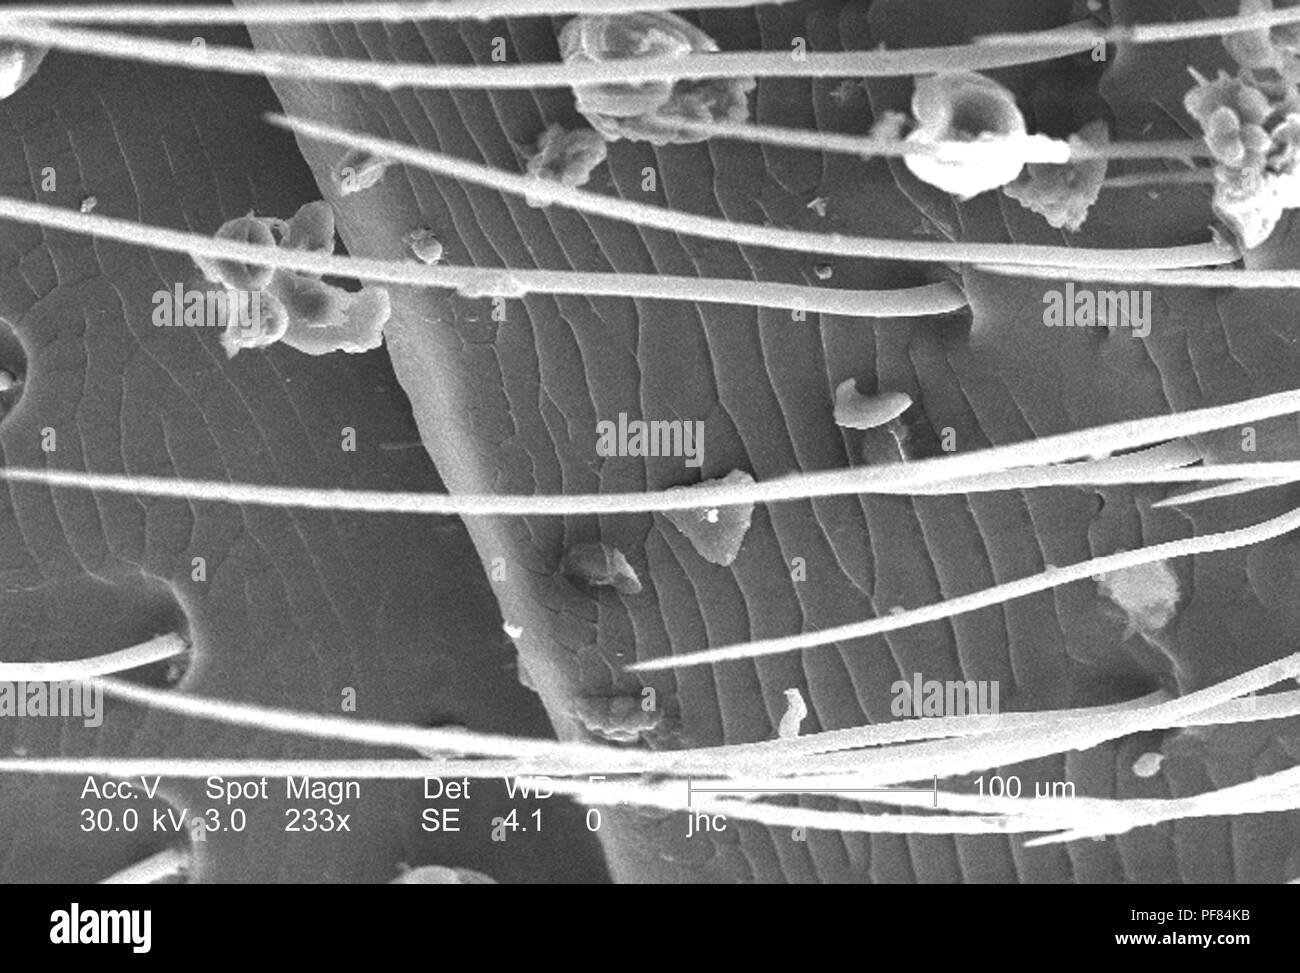 Ultrastrutturali caratteristiche morfologiche sulla superficie ventrale del maschio carpenter bee di addome (Xylocopa virginica) trovato in Decatur, Georgia, raffigurato nella 233x di scansione ingrandita al microscopio elettronico (SEM) immagine, 2006. Immagine cortesia di centri per il controllo delle malattie (CDC) / Janice Carr, Oren Mayer. () Foto Stock